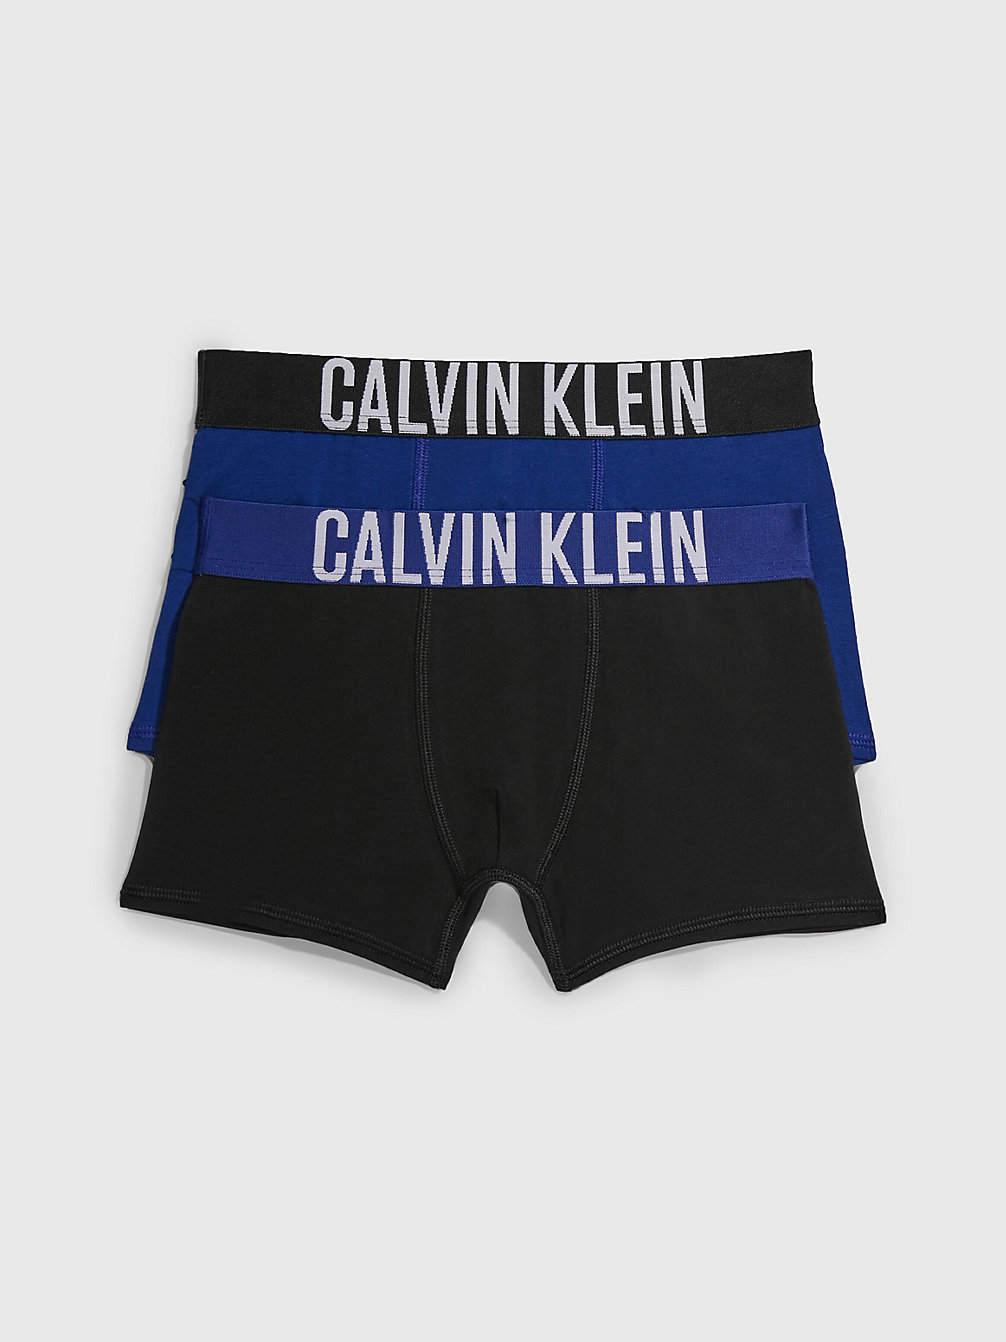 BOLDBLUE/PVHBLACK > 2er-Pack Boxershorts Für Jungen - Intense Power > undefined Jungen - Calvin Klein